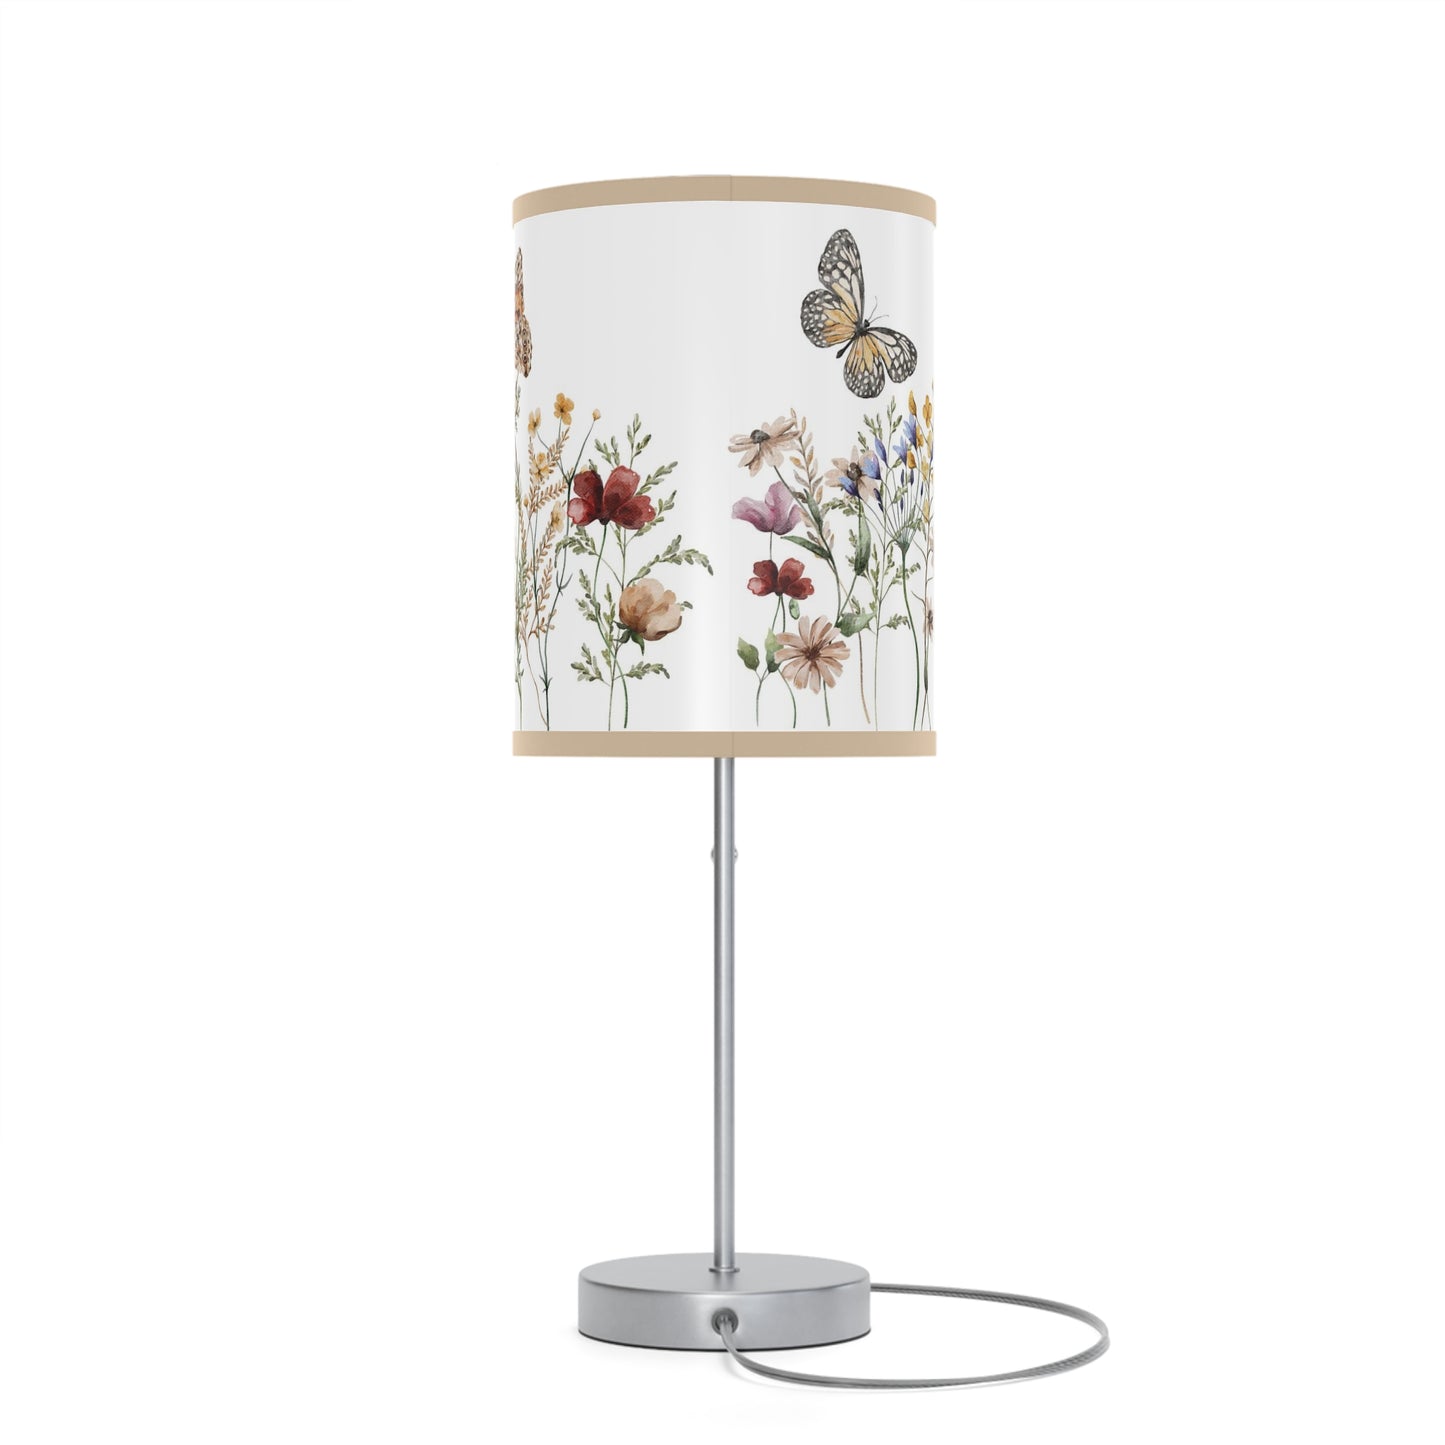 Wildflowers table lamp, Butterfly nursery decor - Butterfly Garden